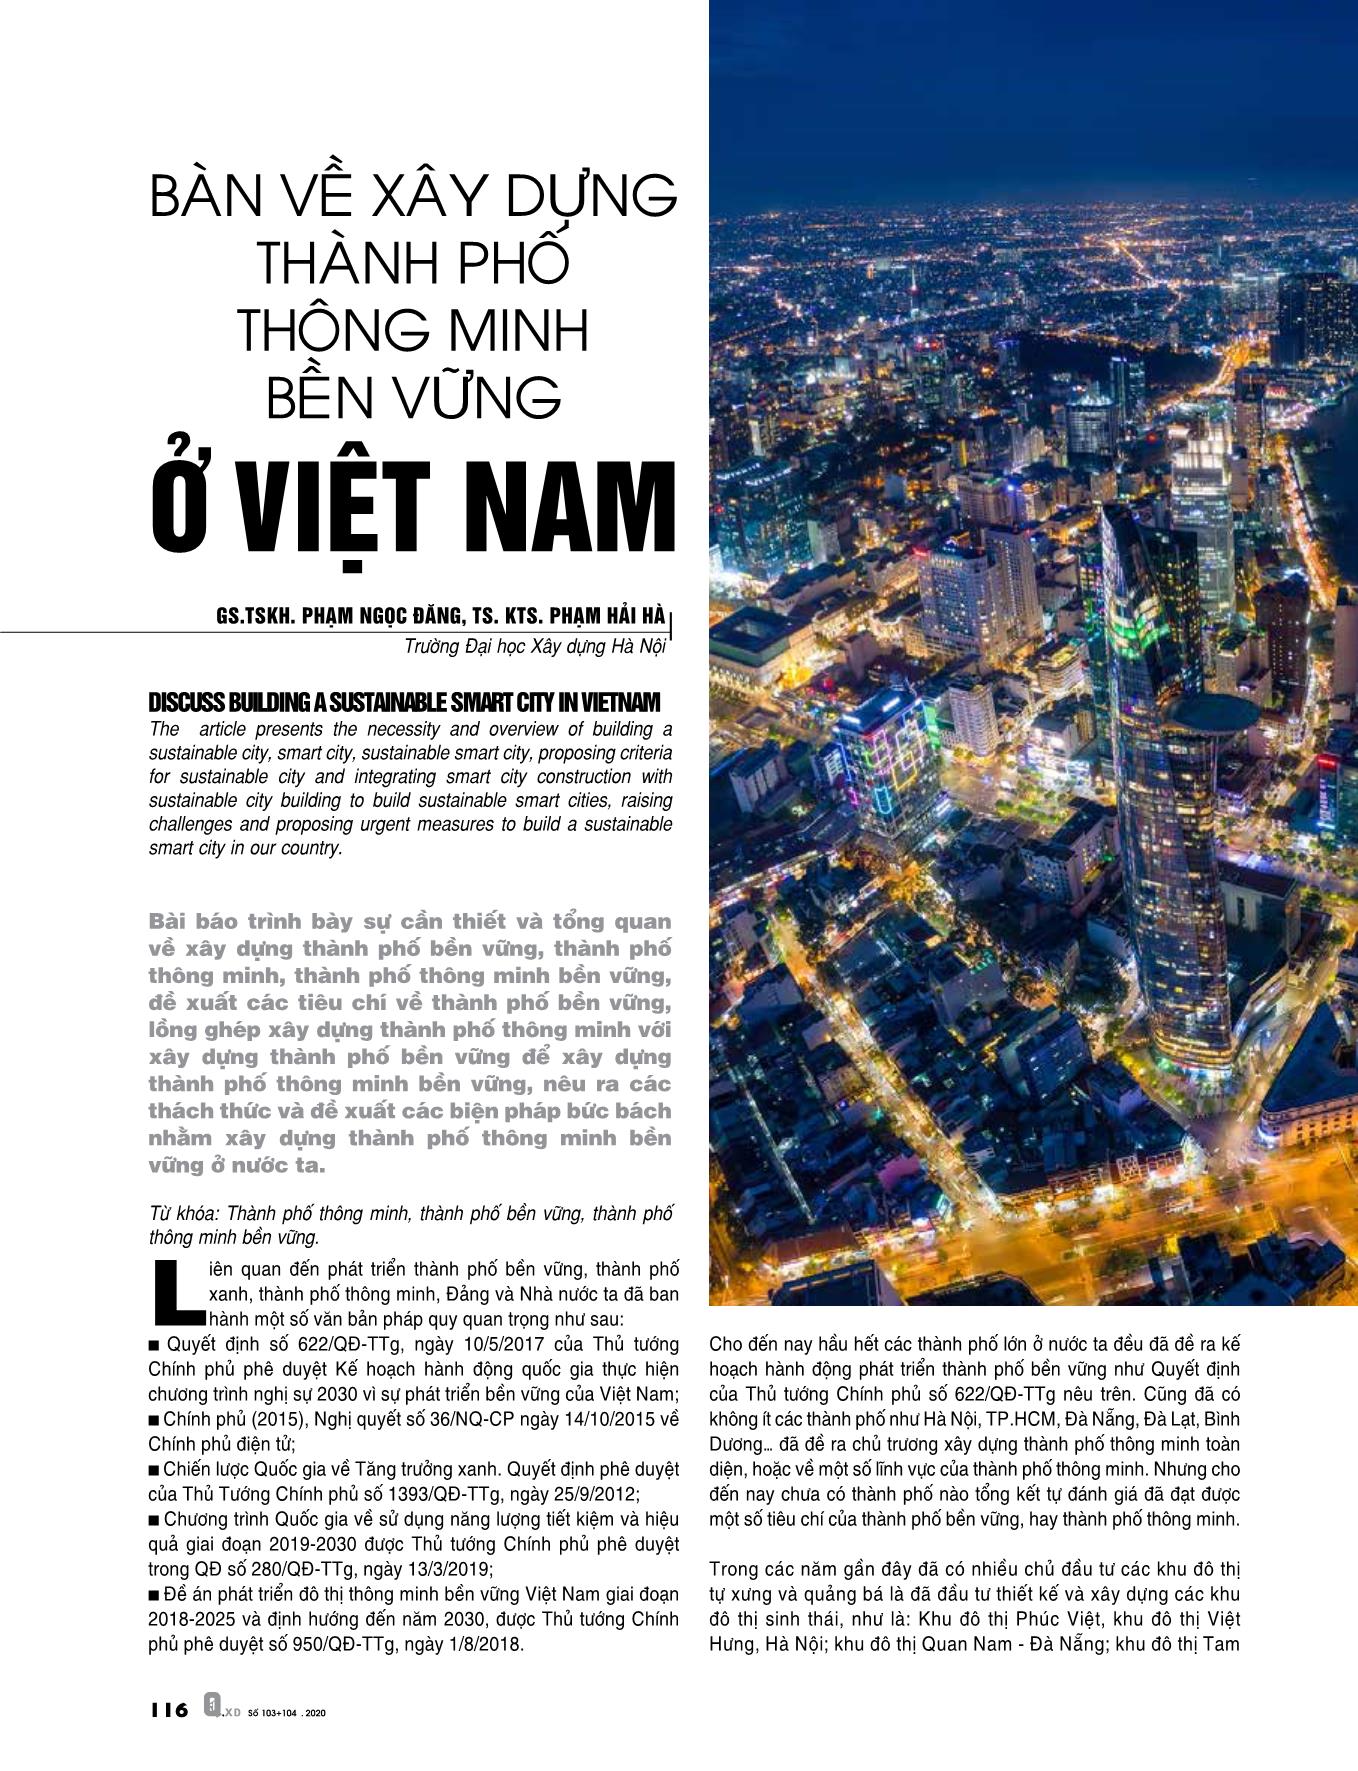 Bàn về xây dựng thành phố thông minh bền vững ở Việt Nam trang 1